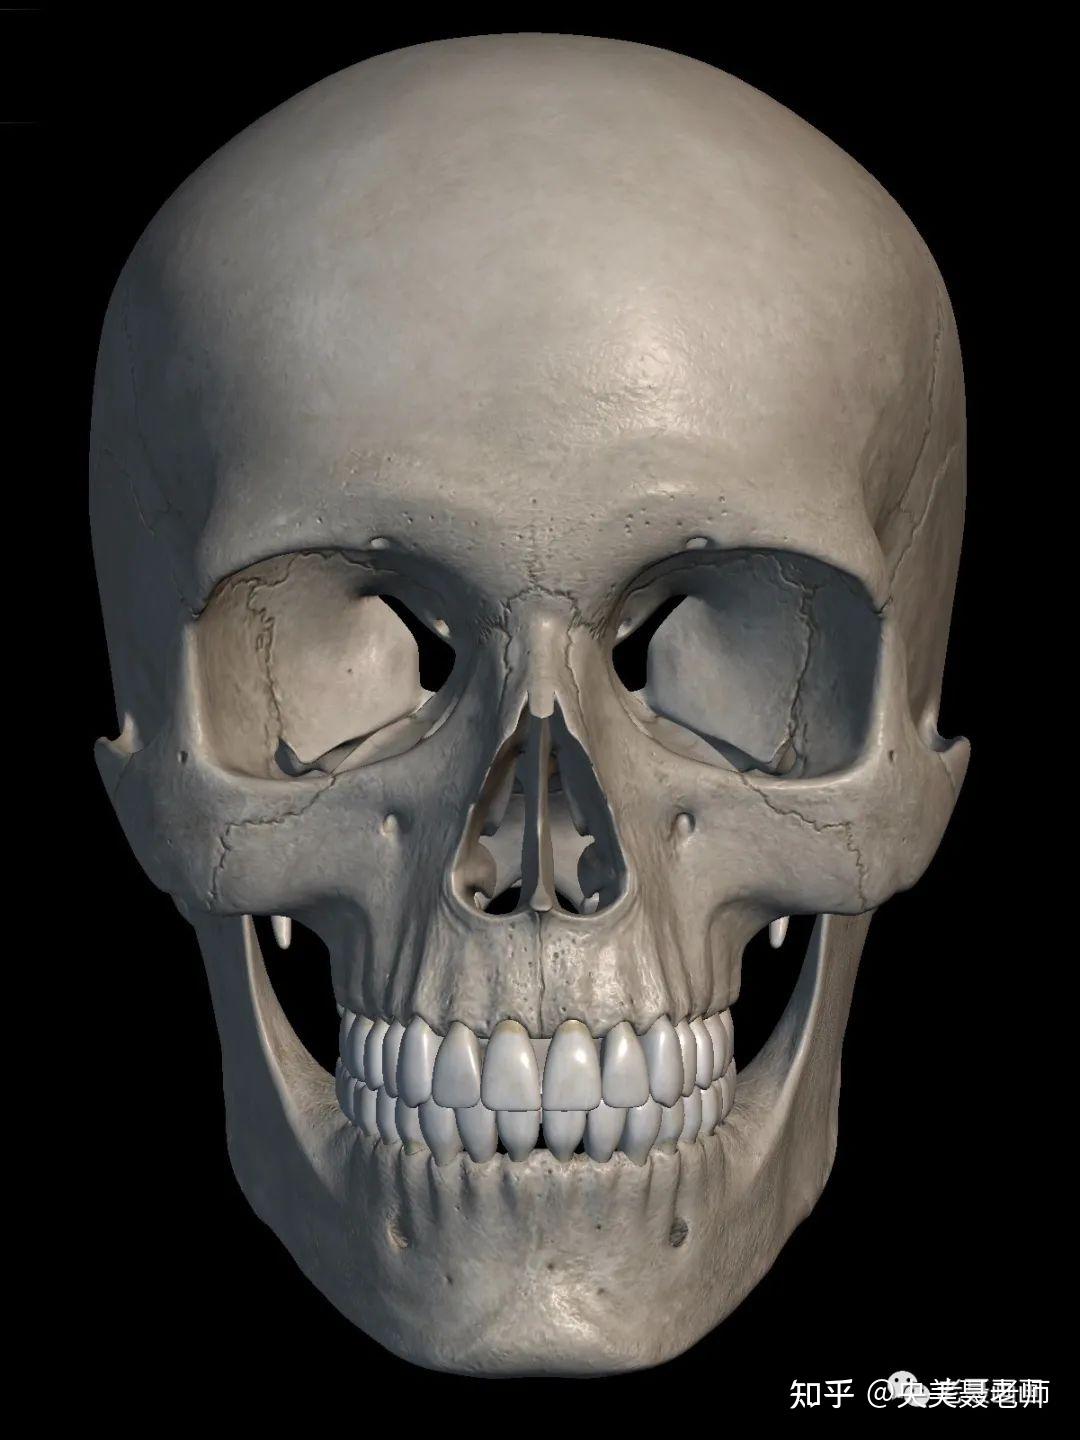 1,定出整体头骨大的框架,注意大小透视,以及头颅和下颌的形状特征2,铺